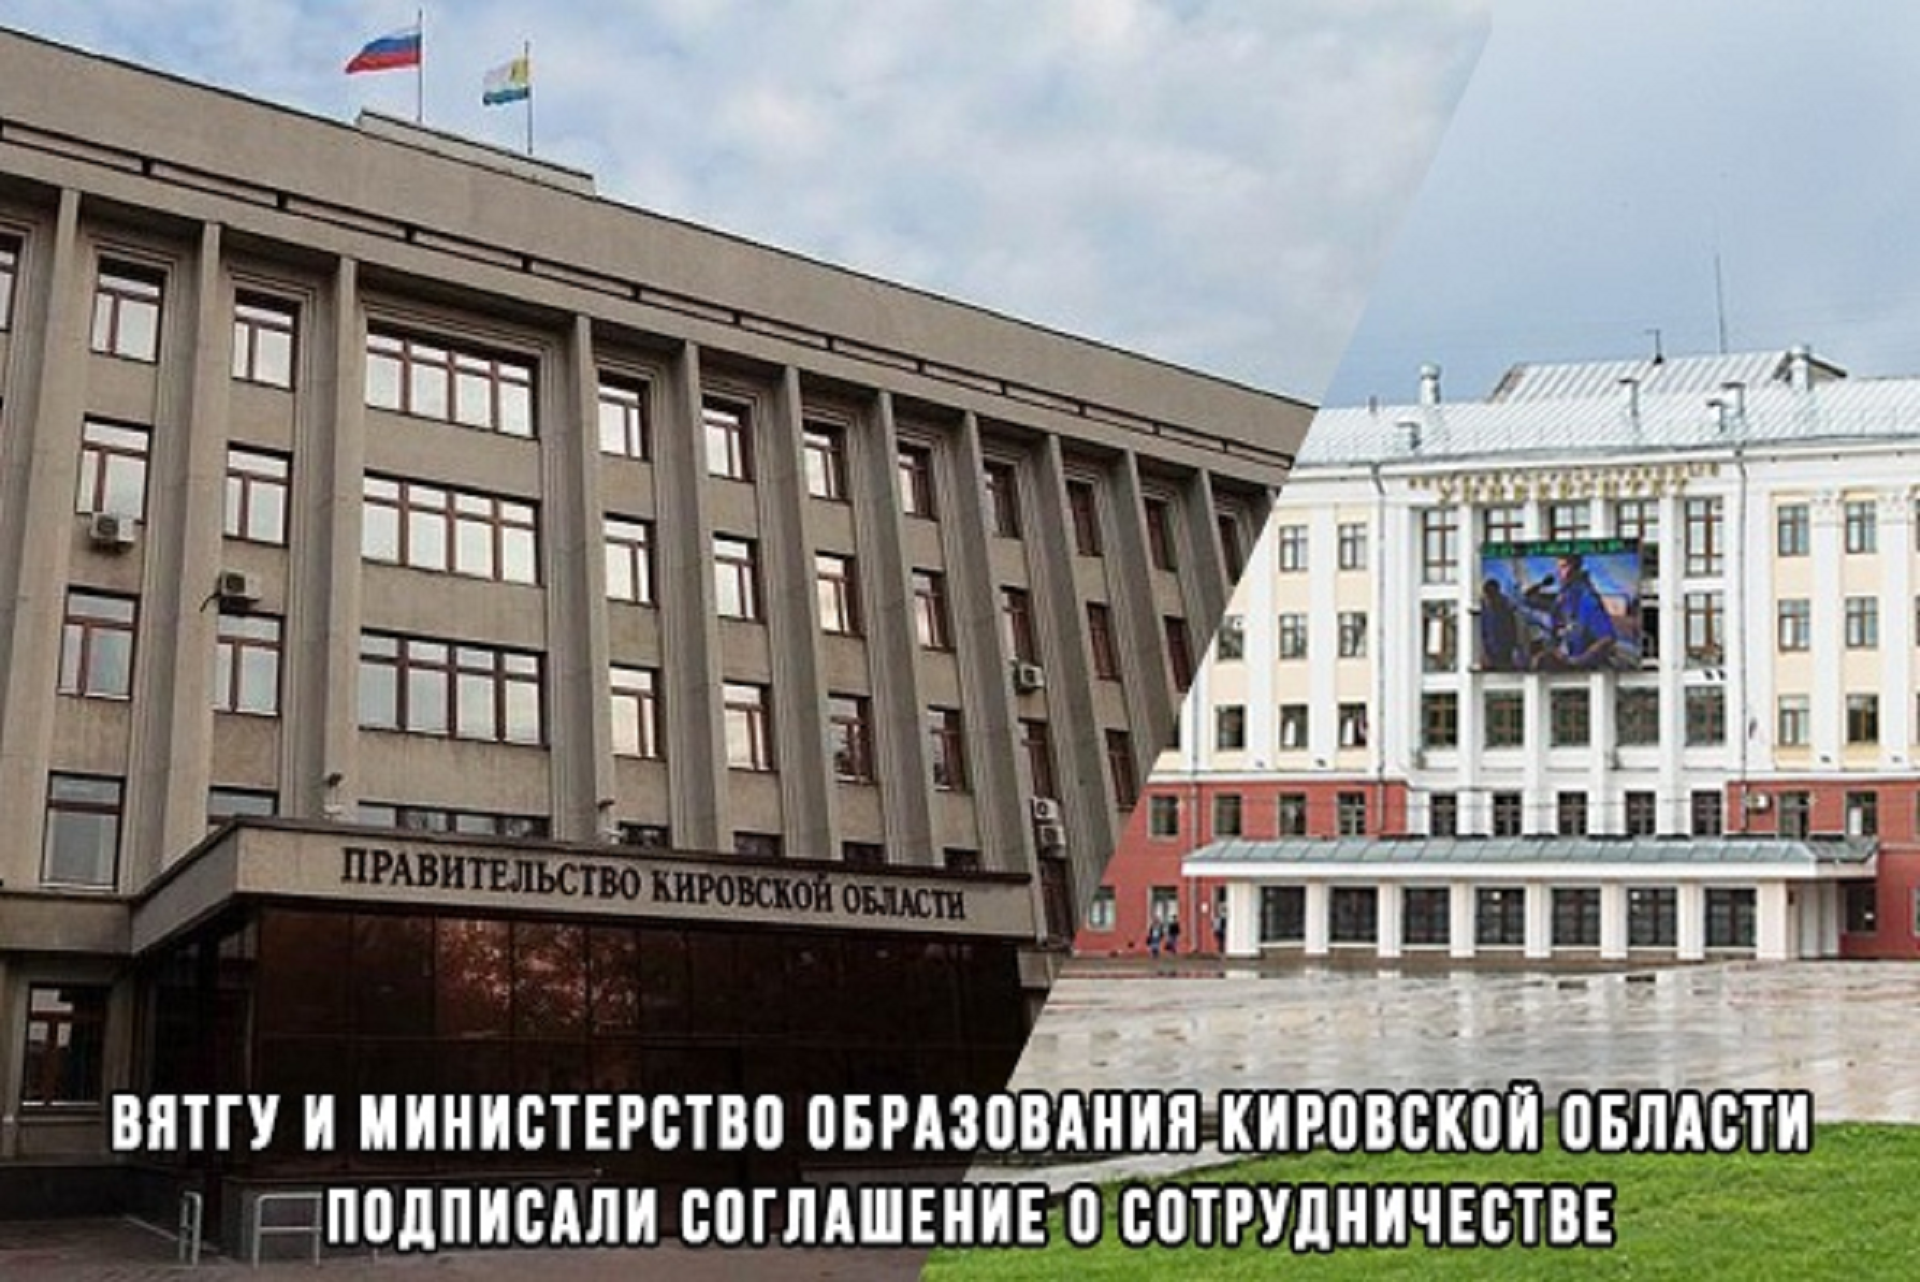 Опорный университет и министерство образования Кировской области подписали соглашение о сотрудничестве и взаимодействии